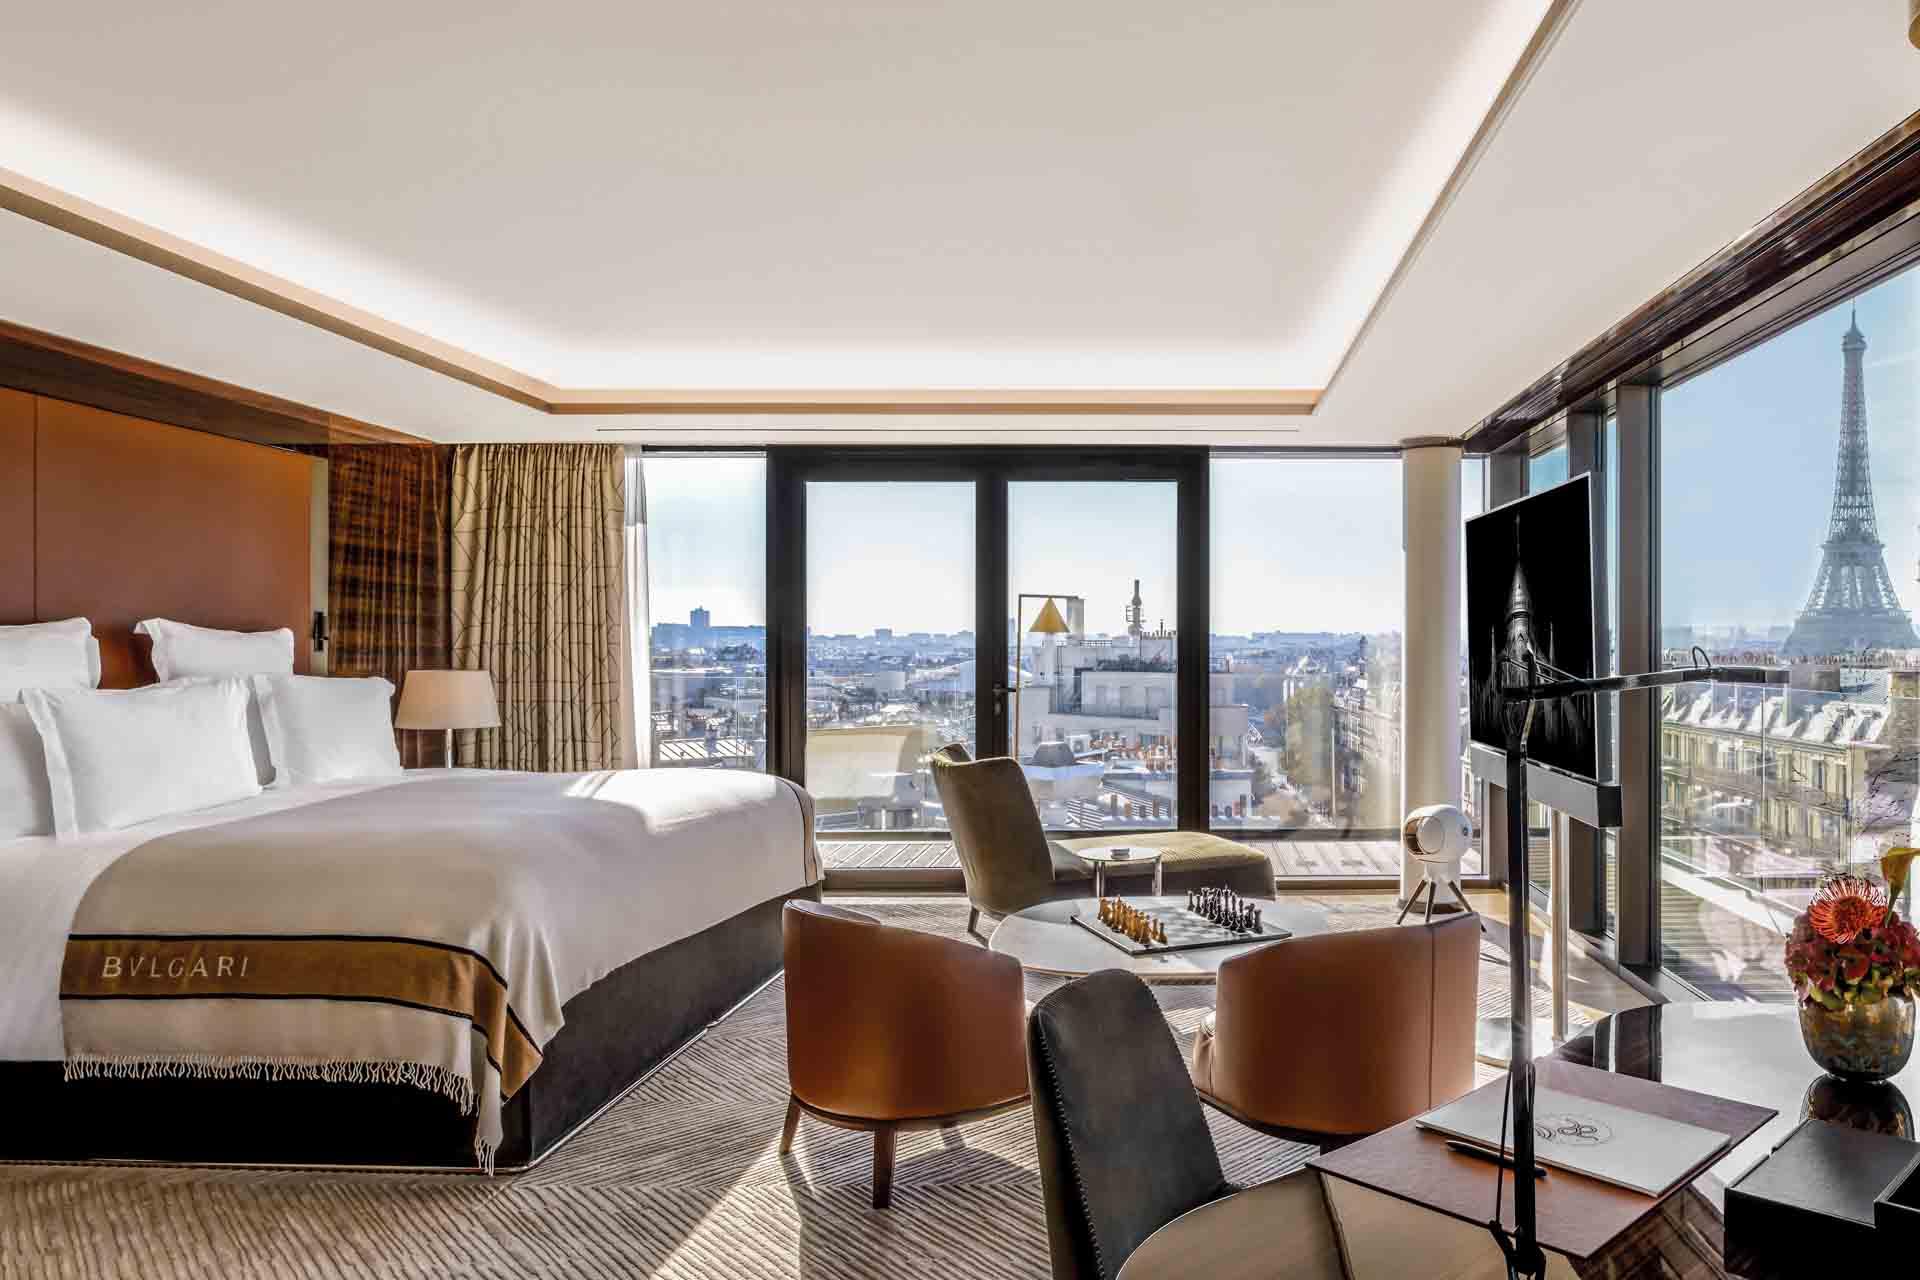 Bulgari Hôtel Paris - Penthouse chambre © DR